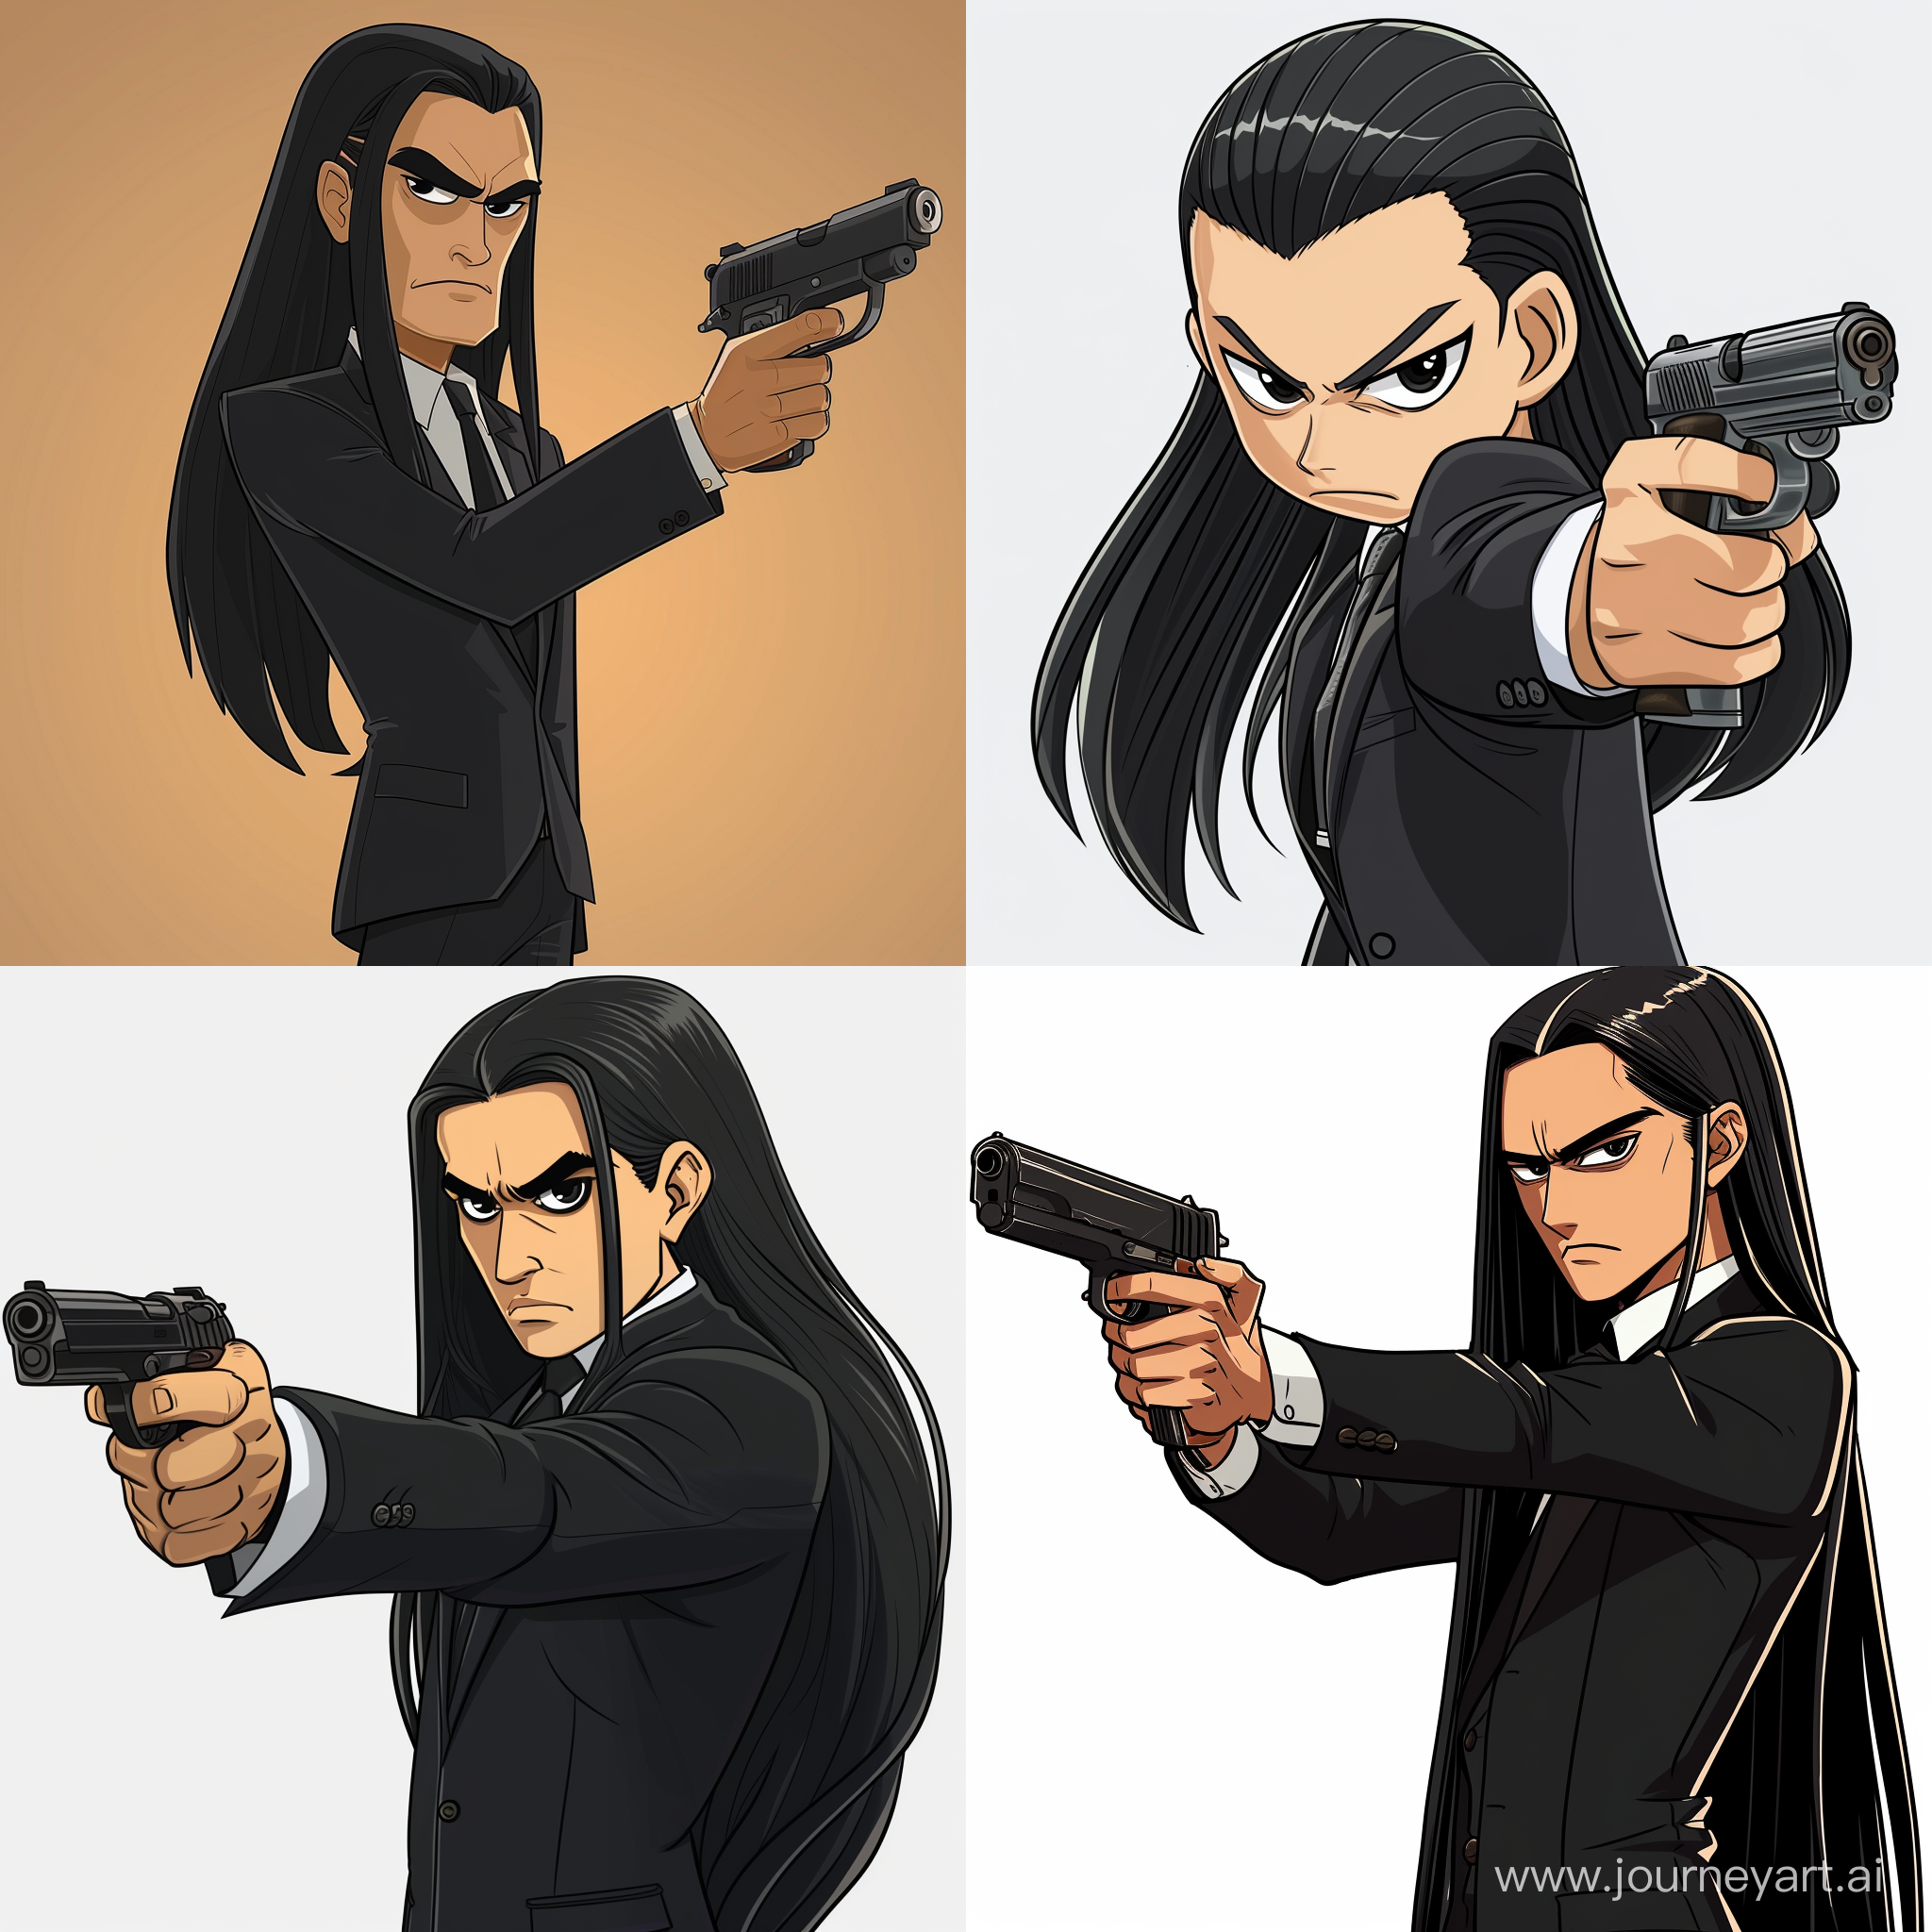 Нарисуй 2d мафиози из мультика с черными  длинными заправленными волосами назад, человек из гта 5 с пистолетом в руках, в черном костюме с моноклем.